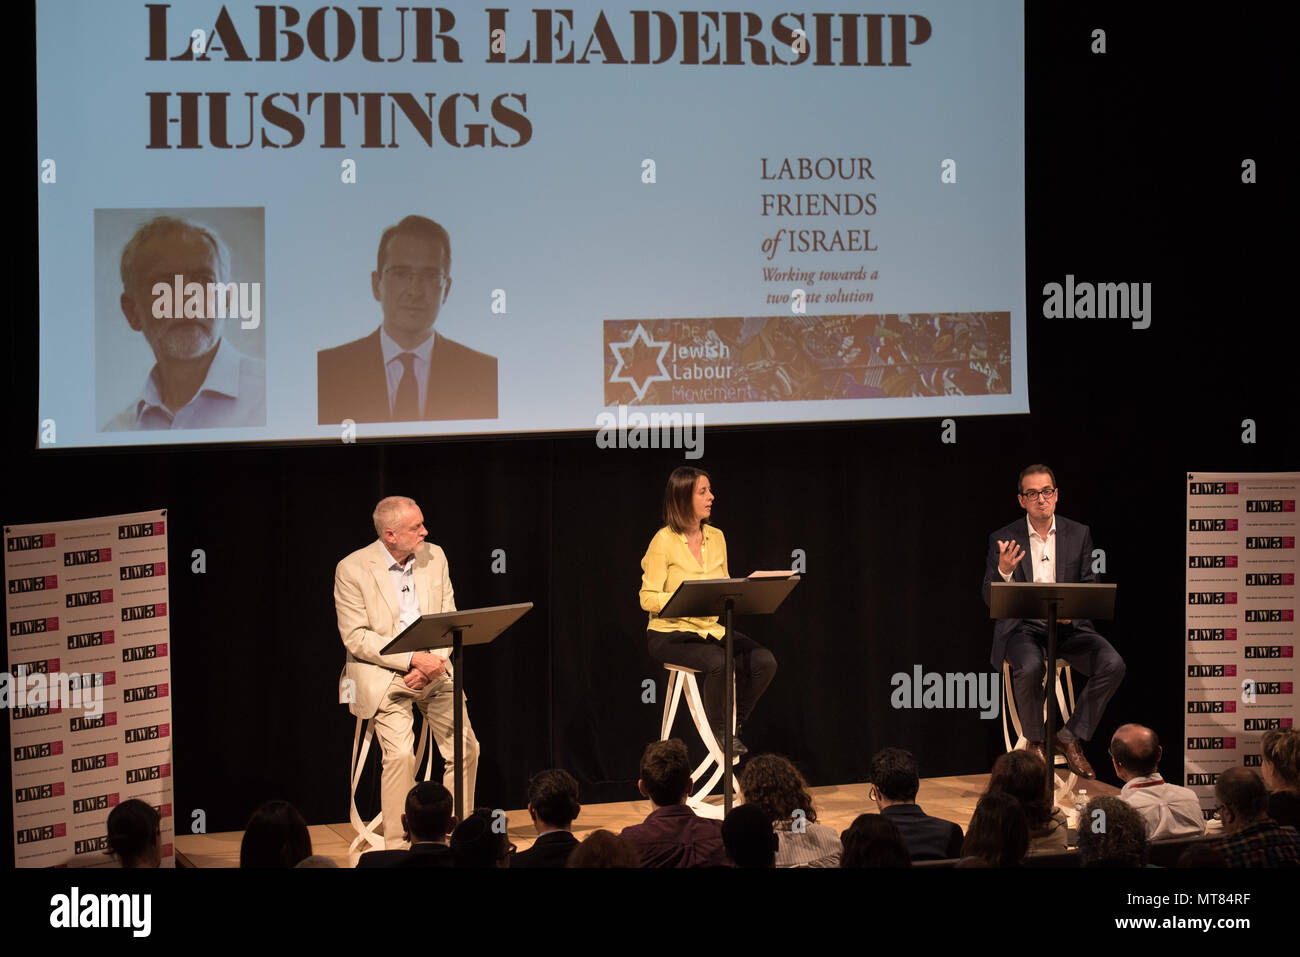 JW3, 341-351 Finchley Road, Londra. 18 settembre 2016. Jeremy Corbyn e Owen Smith prendere parte in un partito laburista hustings leadership evento nel nord L Foto Stock